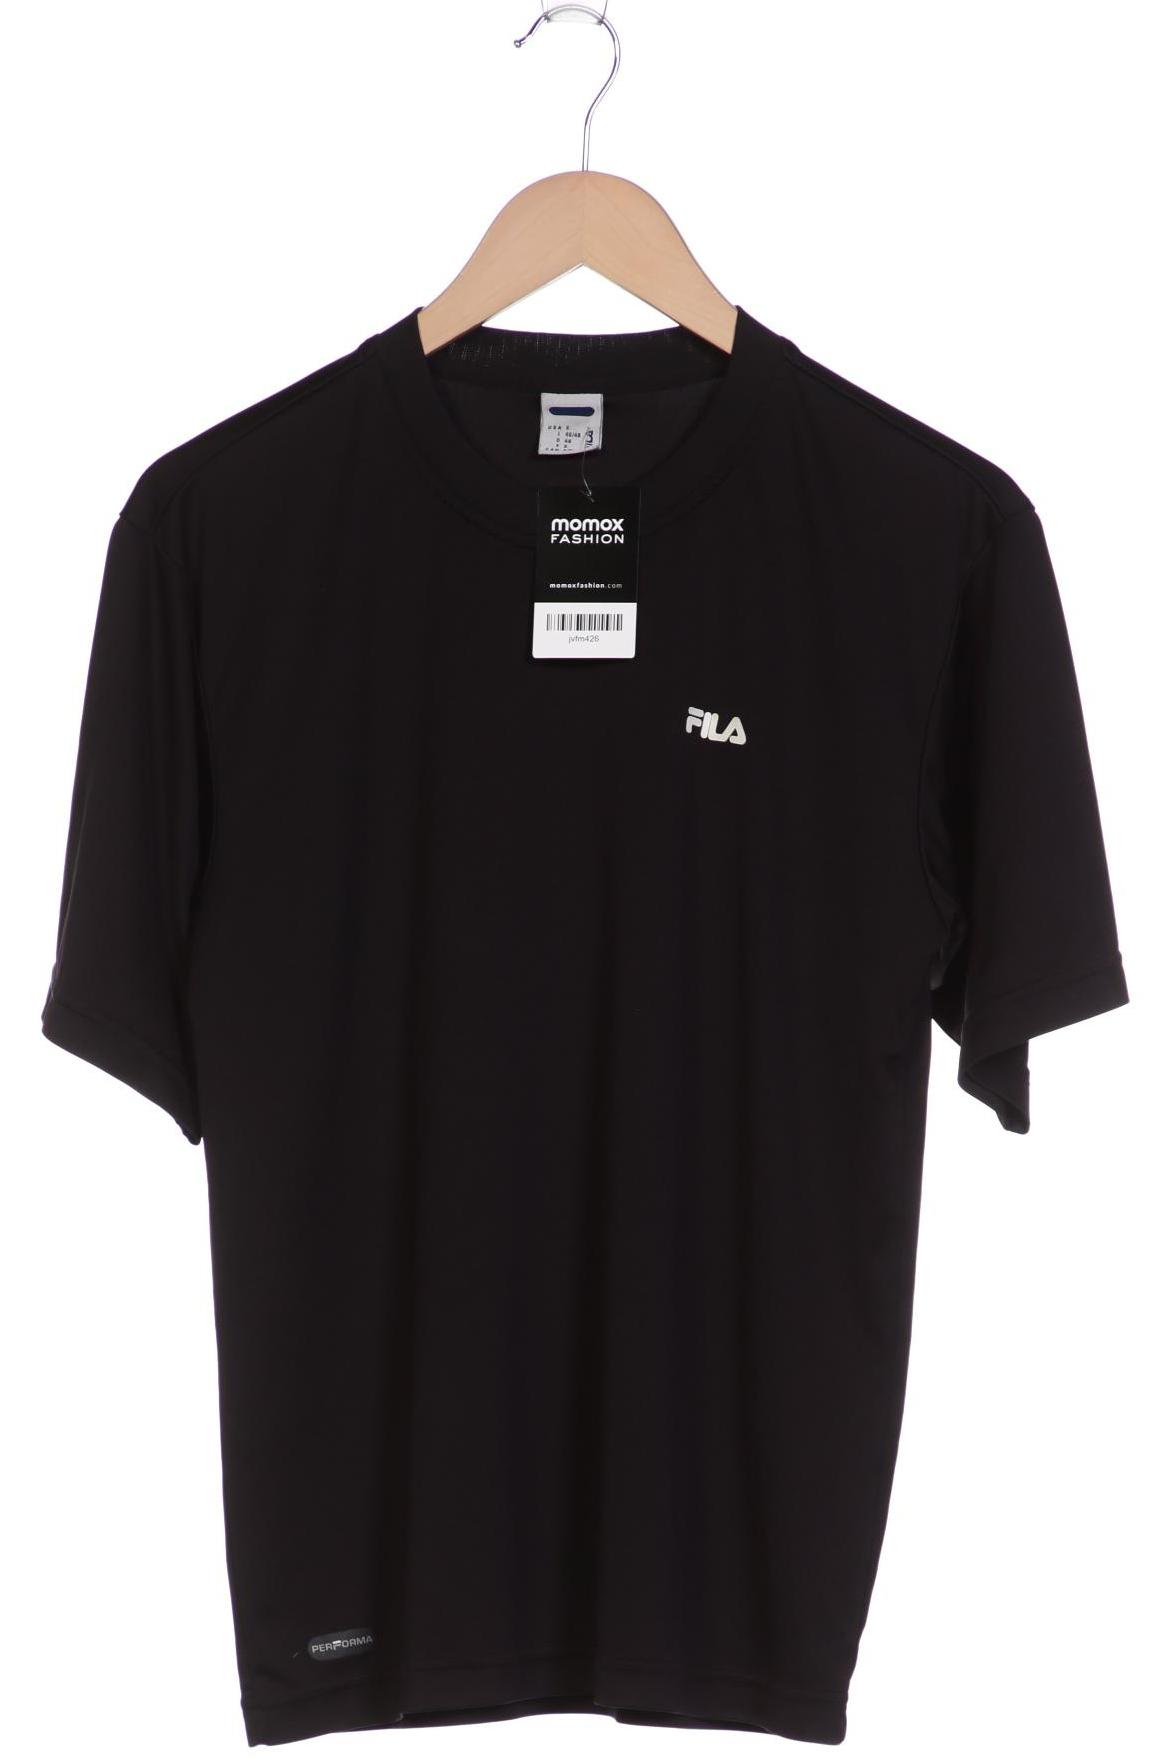 FILA Herren T-Shirt, schwarz von Fila